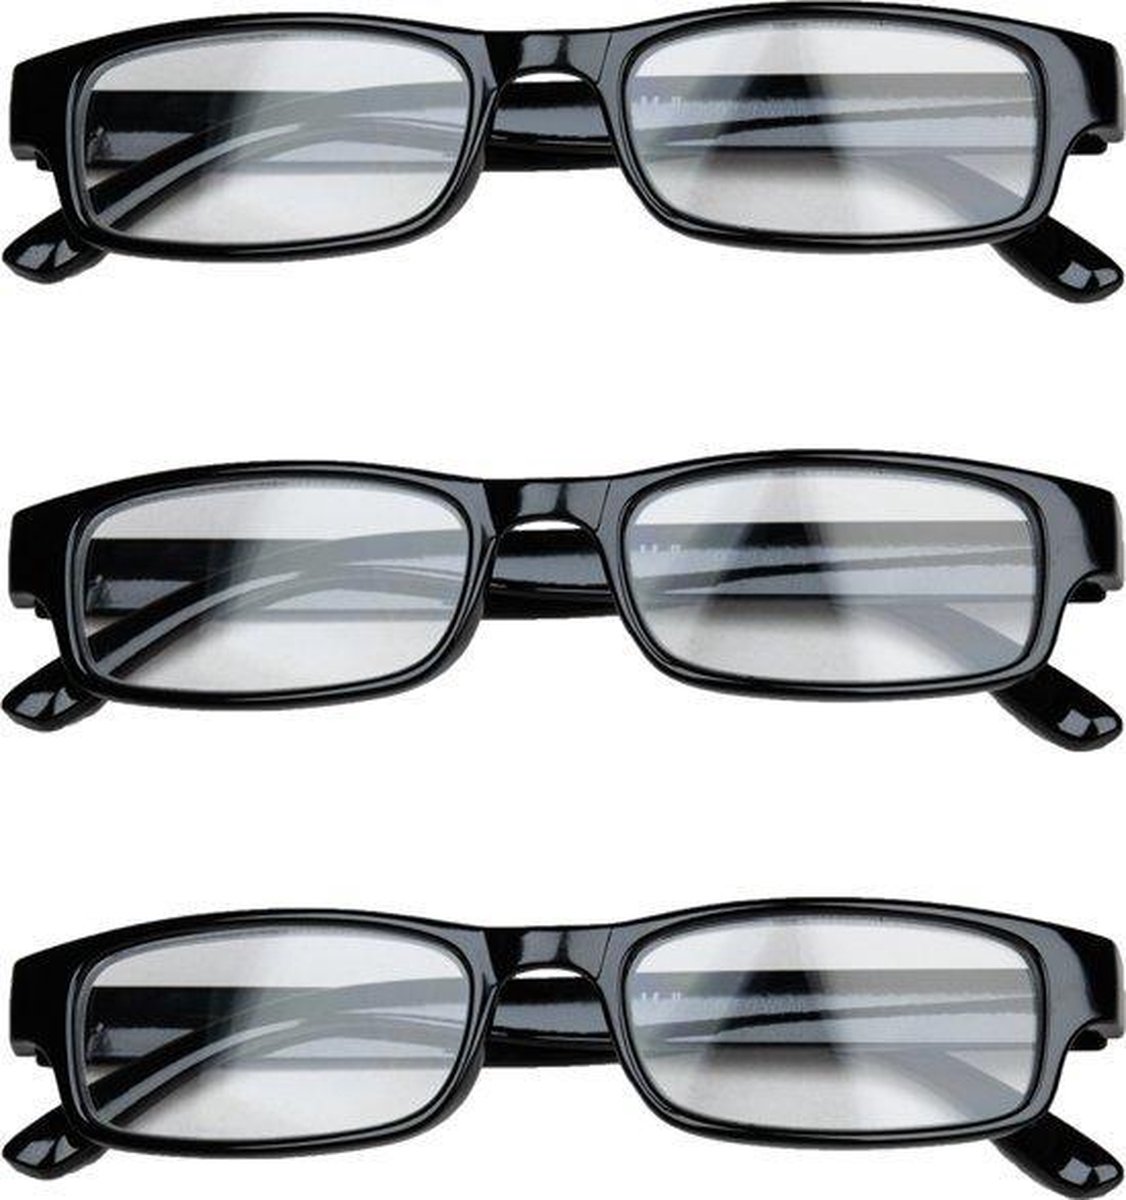 Melleson Eyewear overkijk leesbril zwart +2.00 - 3 stuks + 3 pouches - leesbrillen